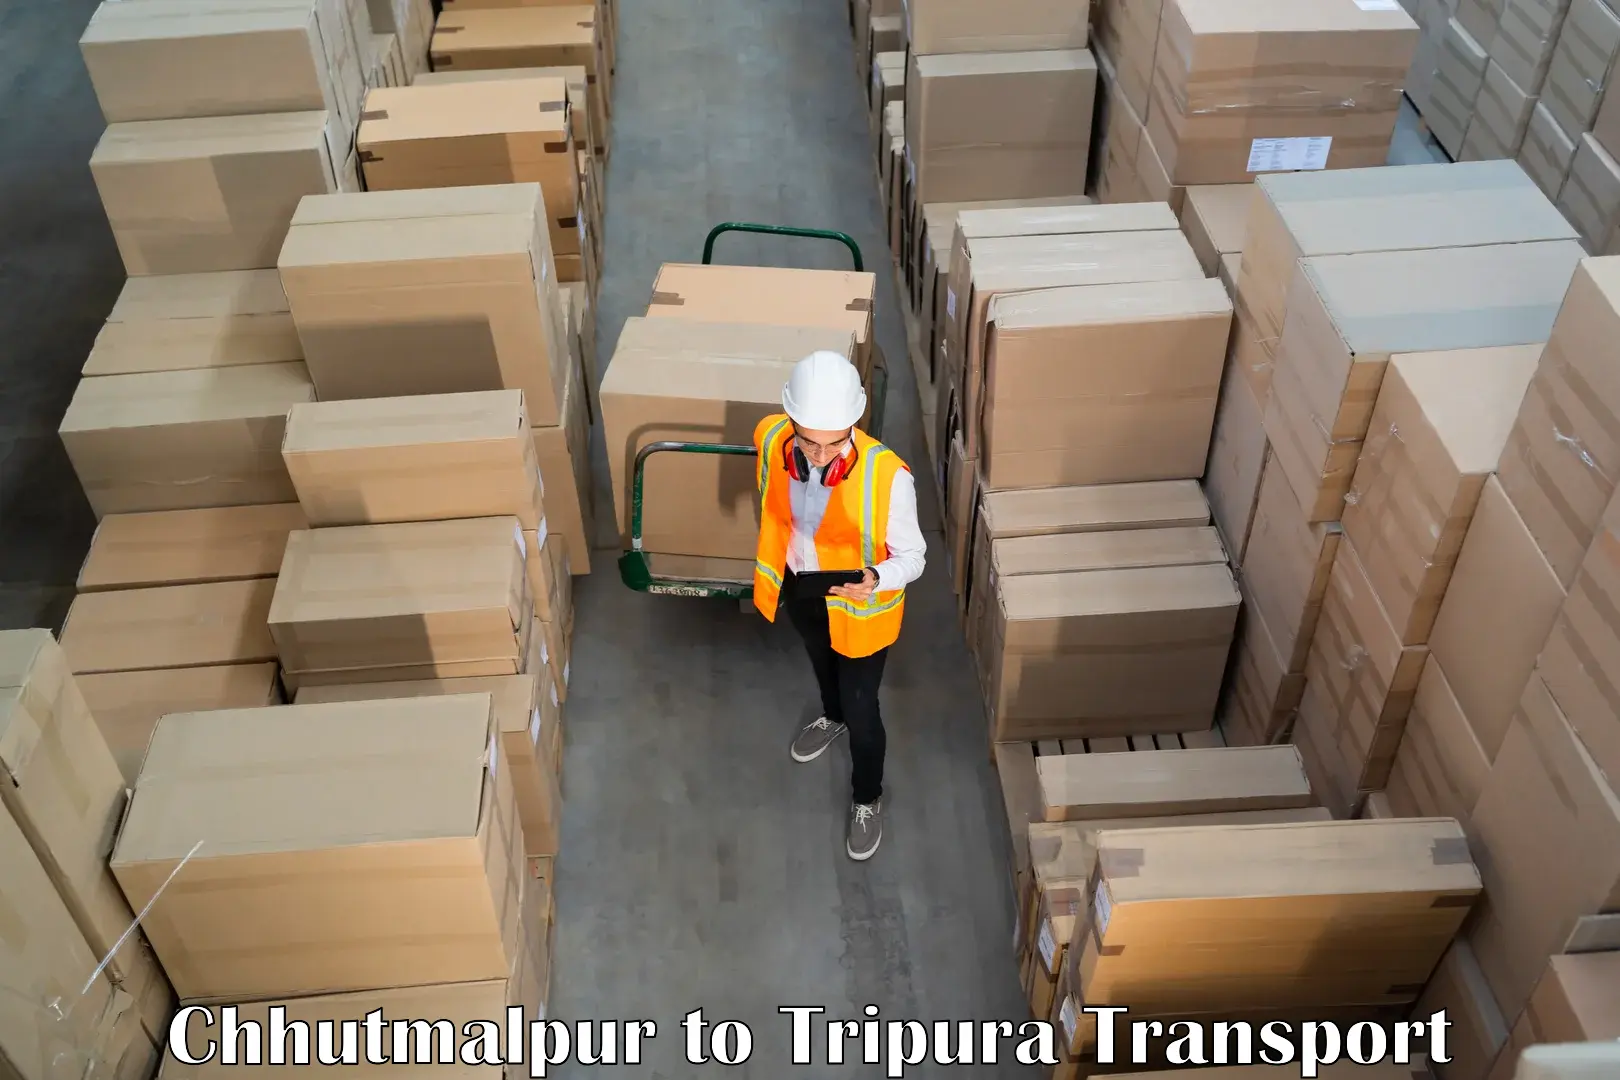 Air freight transport services in Chhutmalpur to Dharmanagar